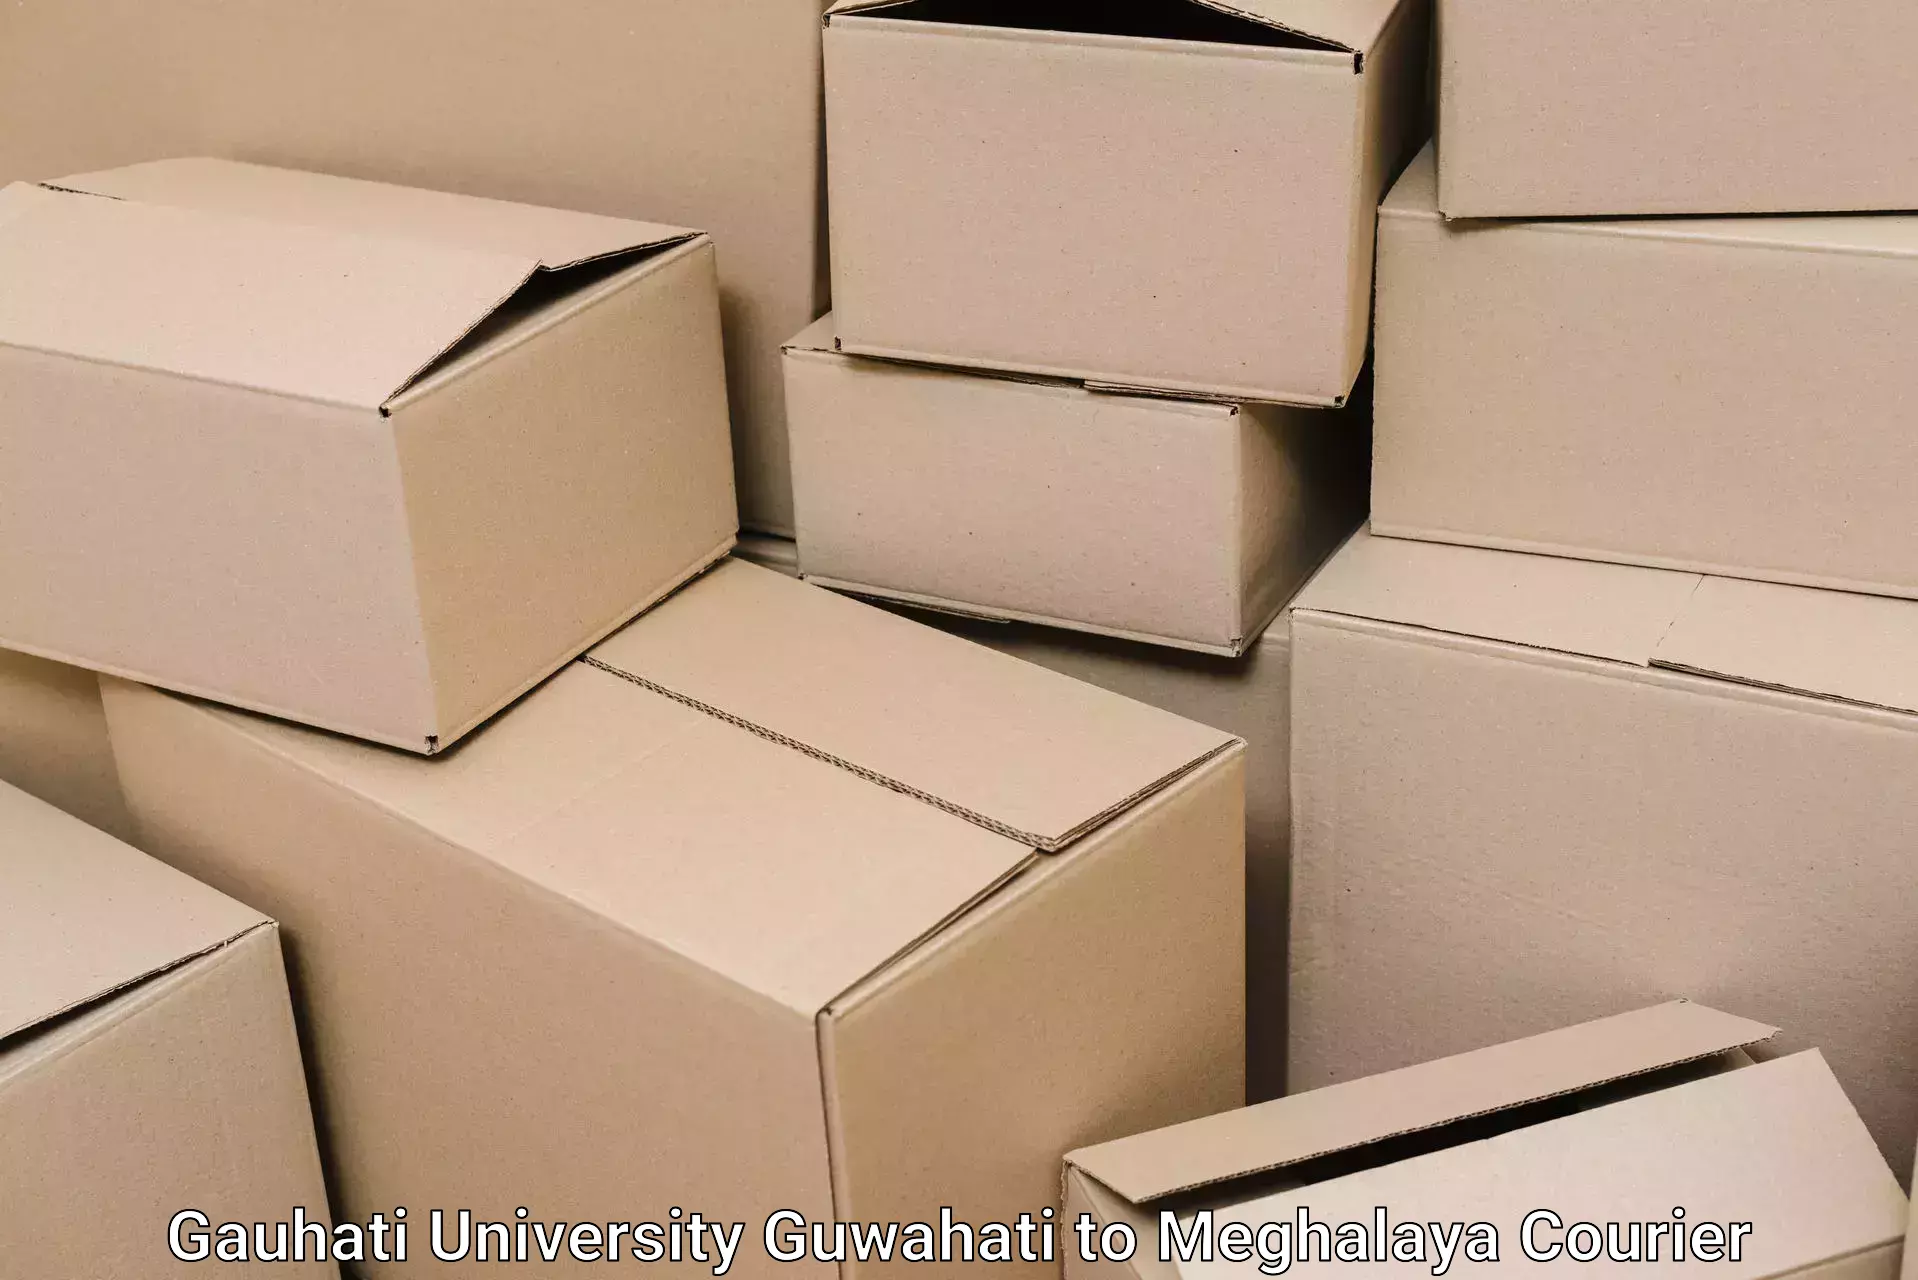 Furniture shipping services Gauhati University Guwahati to Dkhiah West